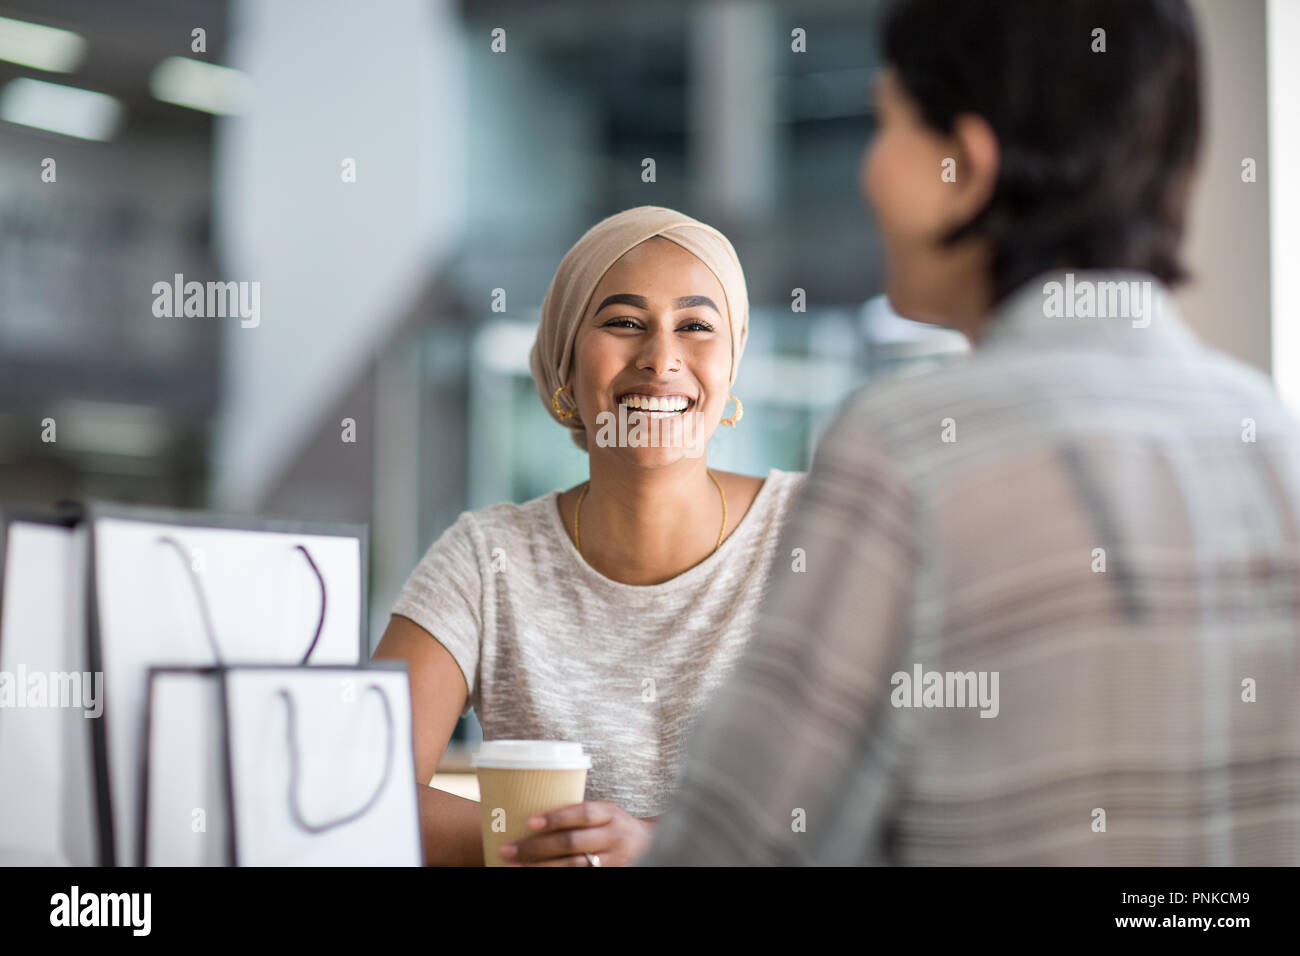 Weibliche muslimische Freunde Kaffee zusammen, die in einem Einkaufszentrum Stockfoto